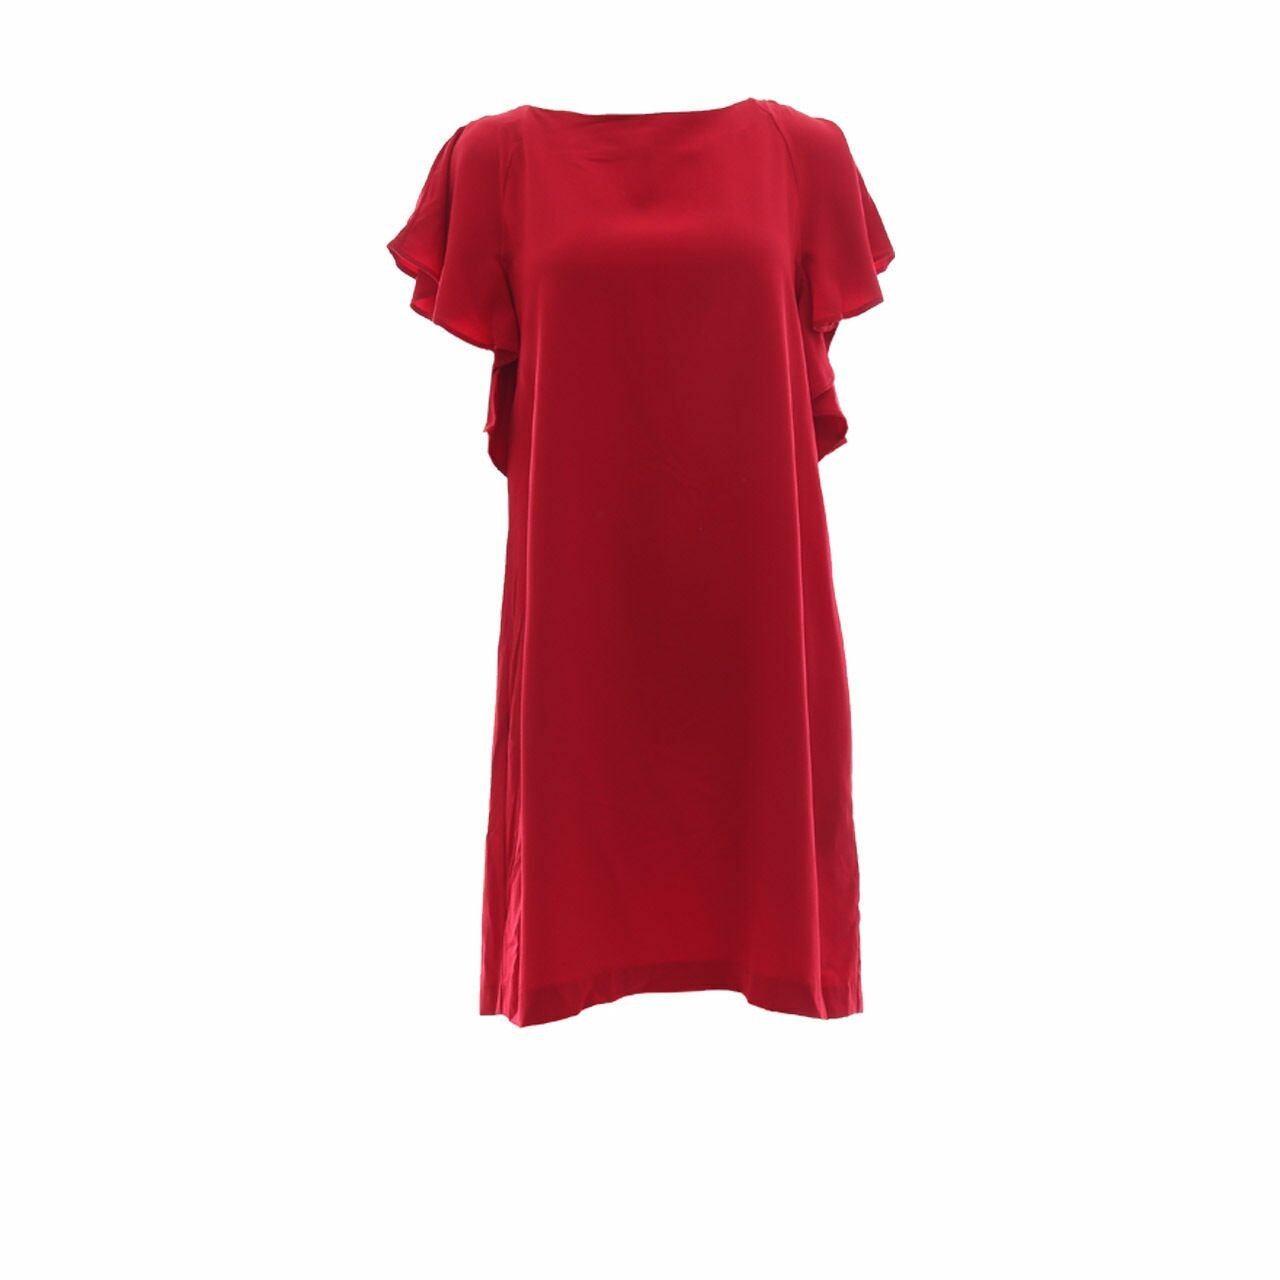 Zara Red Back Cut Out Mini Dress